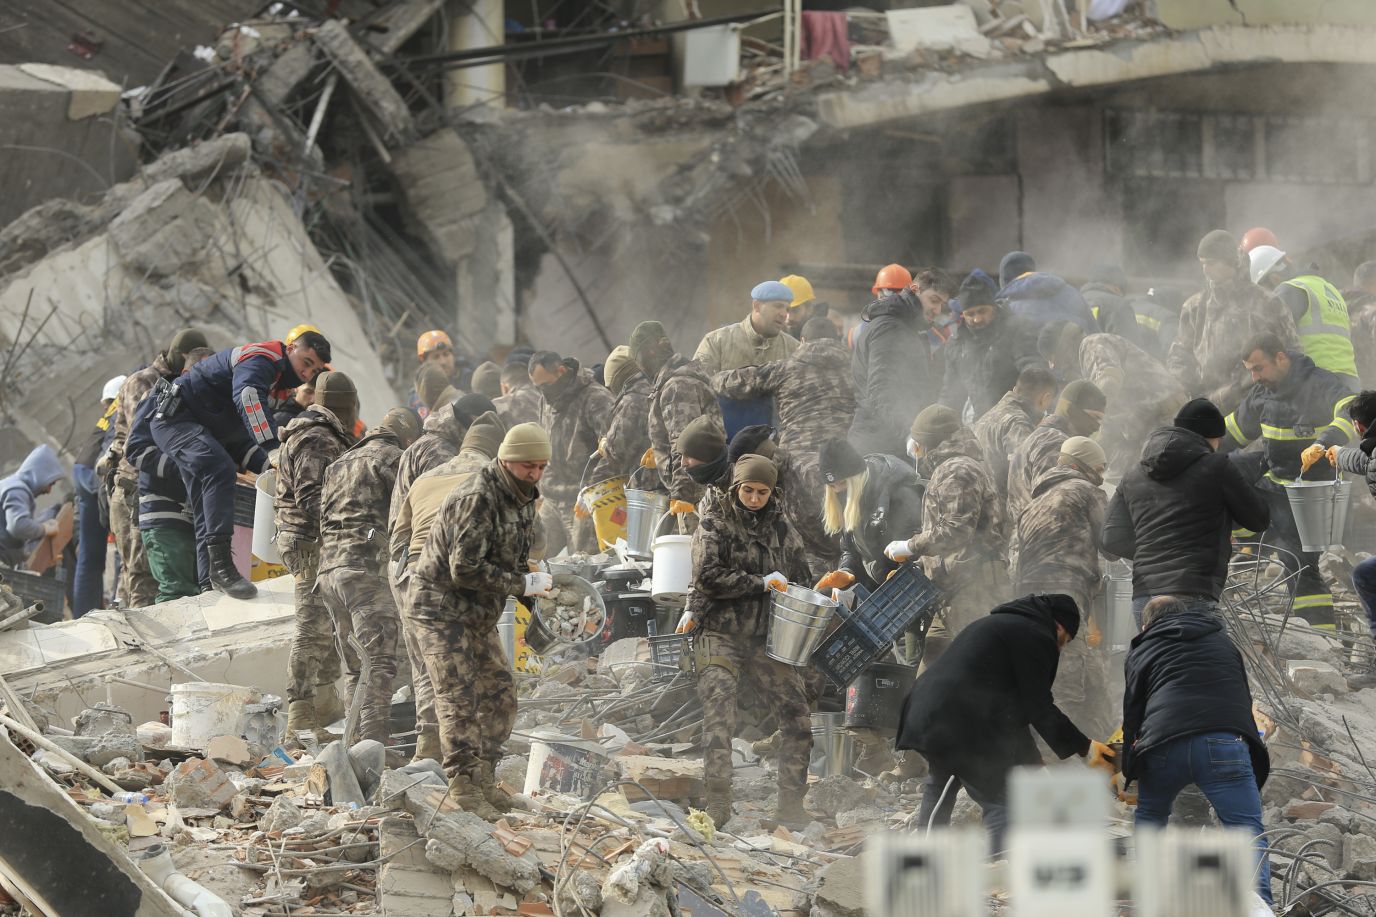 Chùm ảnh hiện trường và nỗ lực cứu hộ sau trận động đất ở Thổ Nhĩ Kỳ và Syria - Ảnh 40.